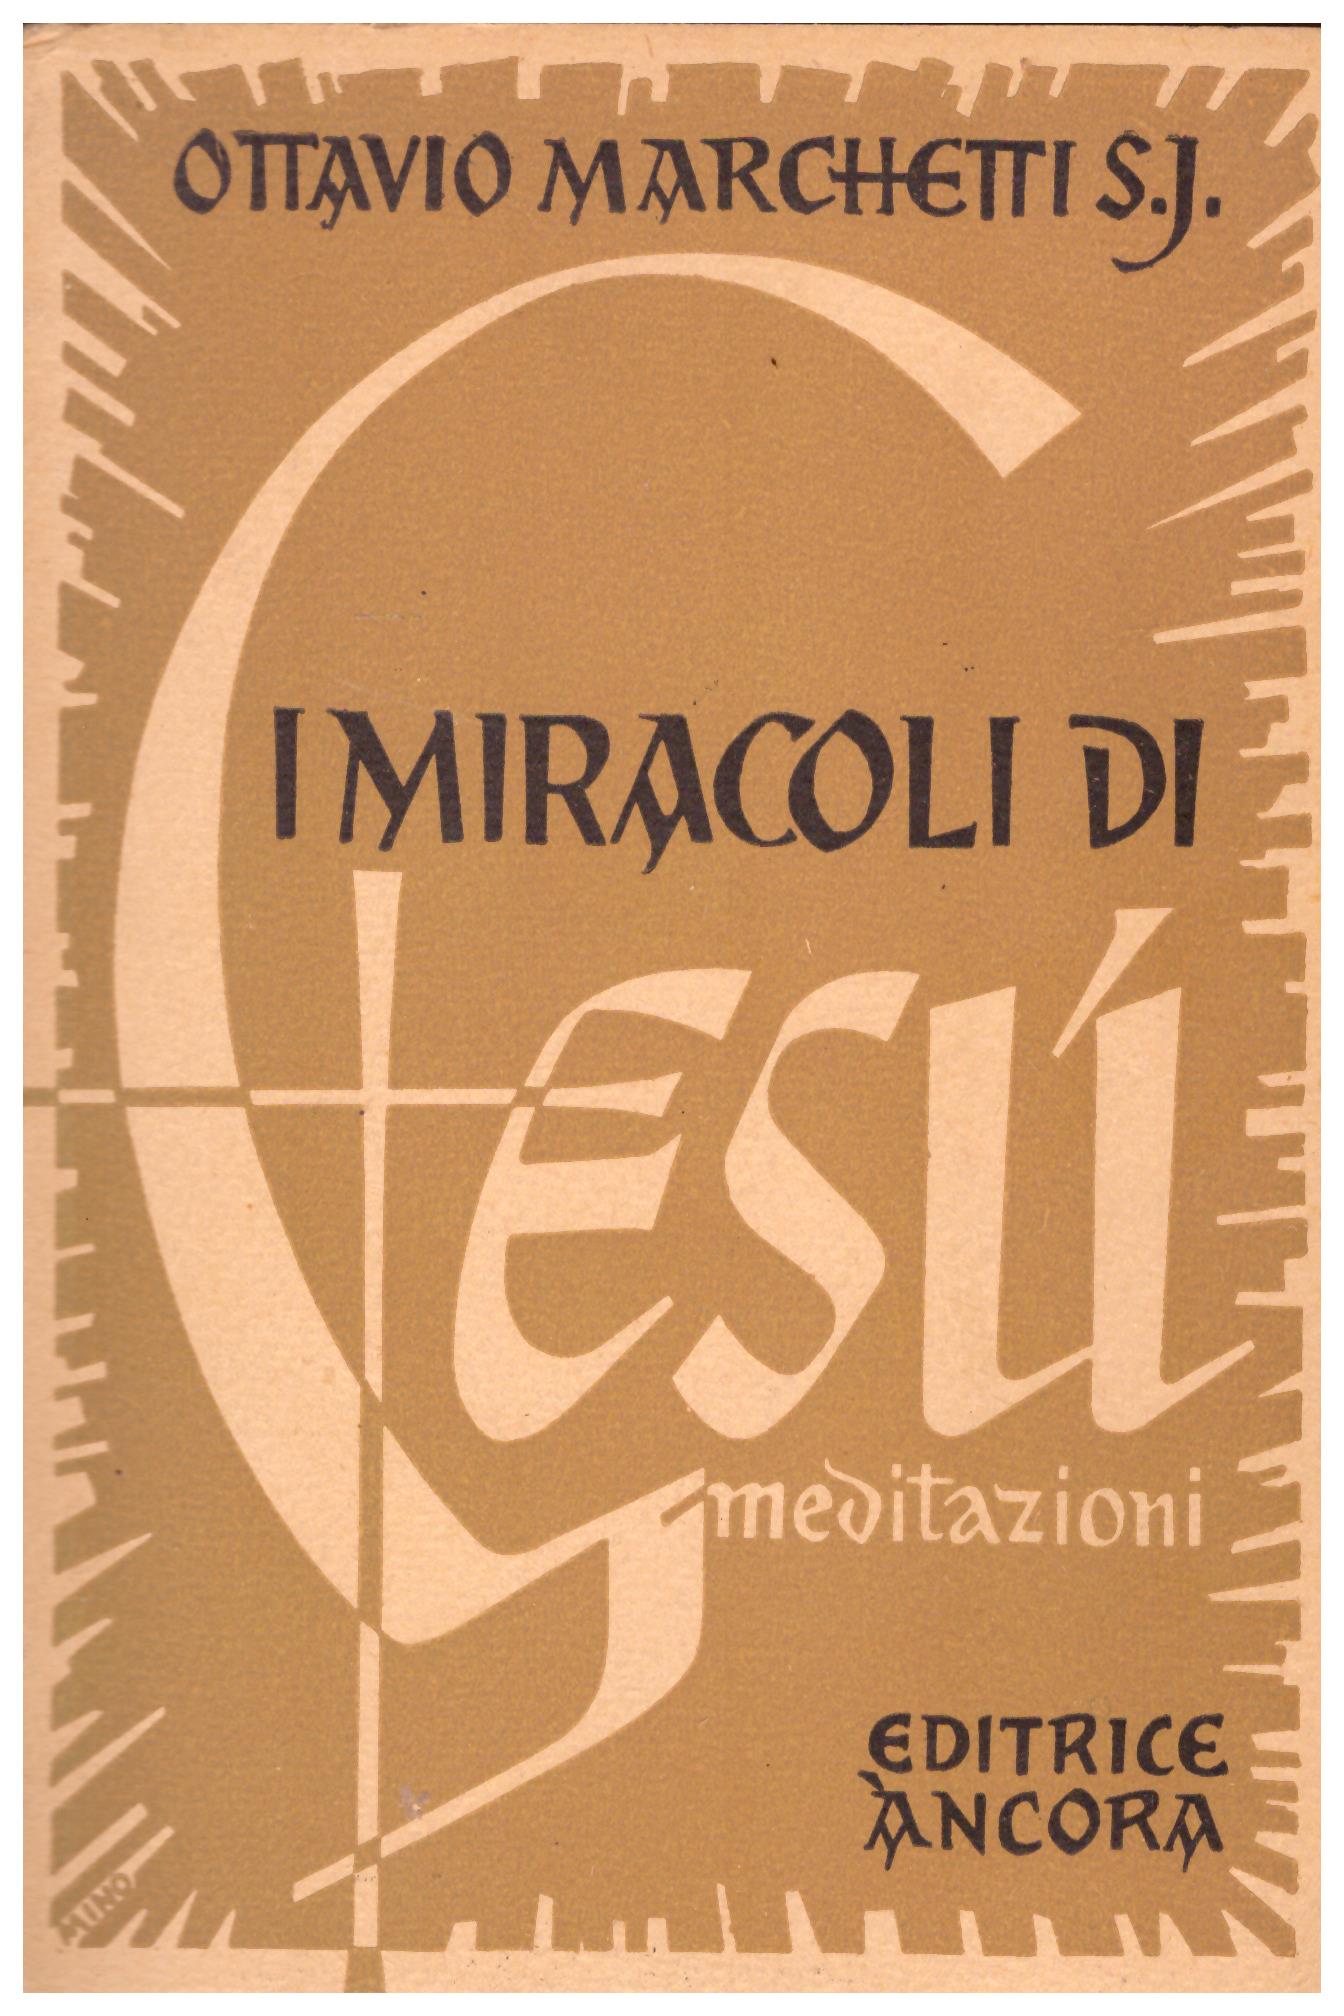 Titolo: I miracoli di Gesù  Autore : Ottavio Marchetti S.J.  Editore: editrice Ancona, 1950 scuola arti grafiche artigianelli